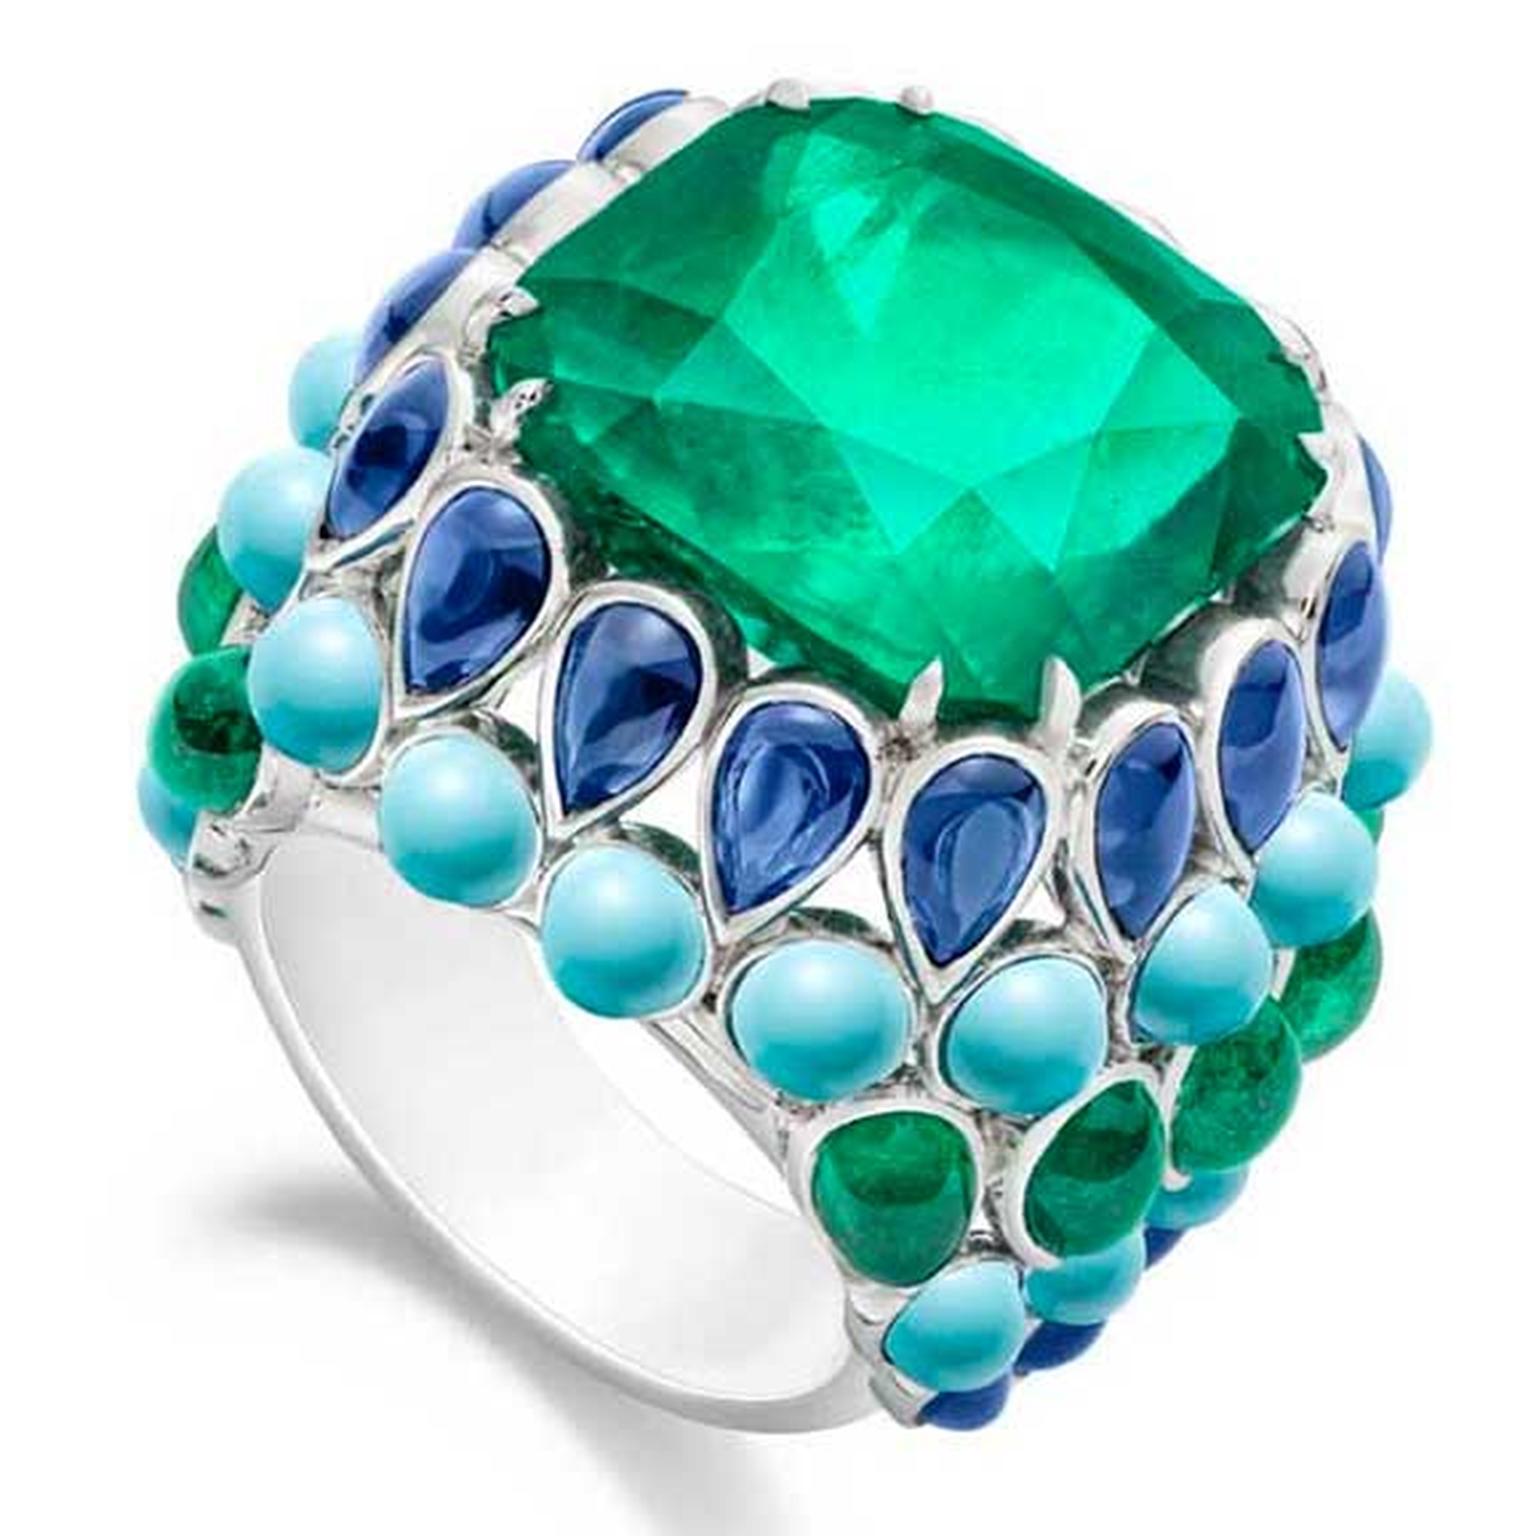 Piaget emerald ring